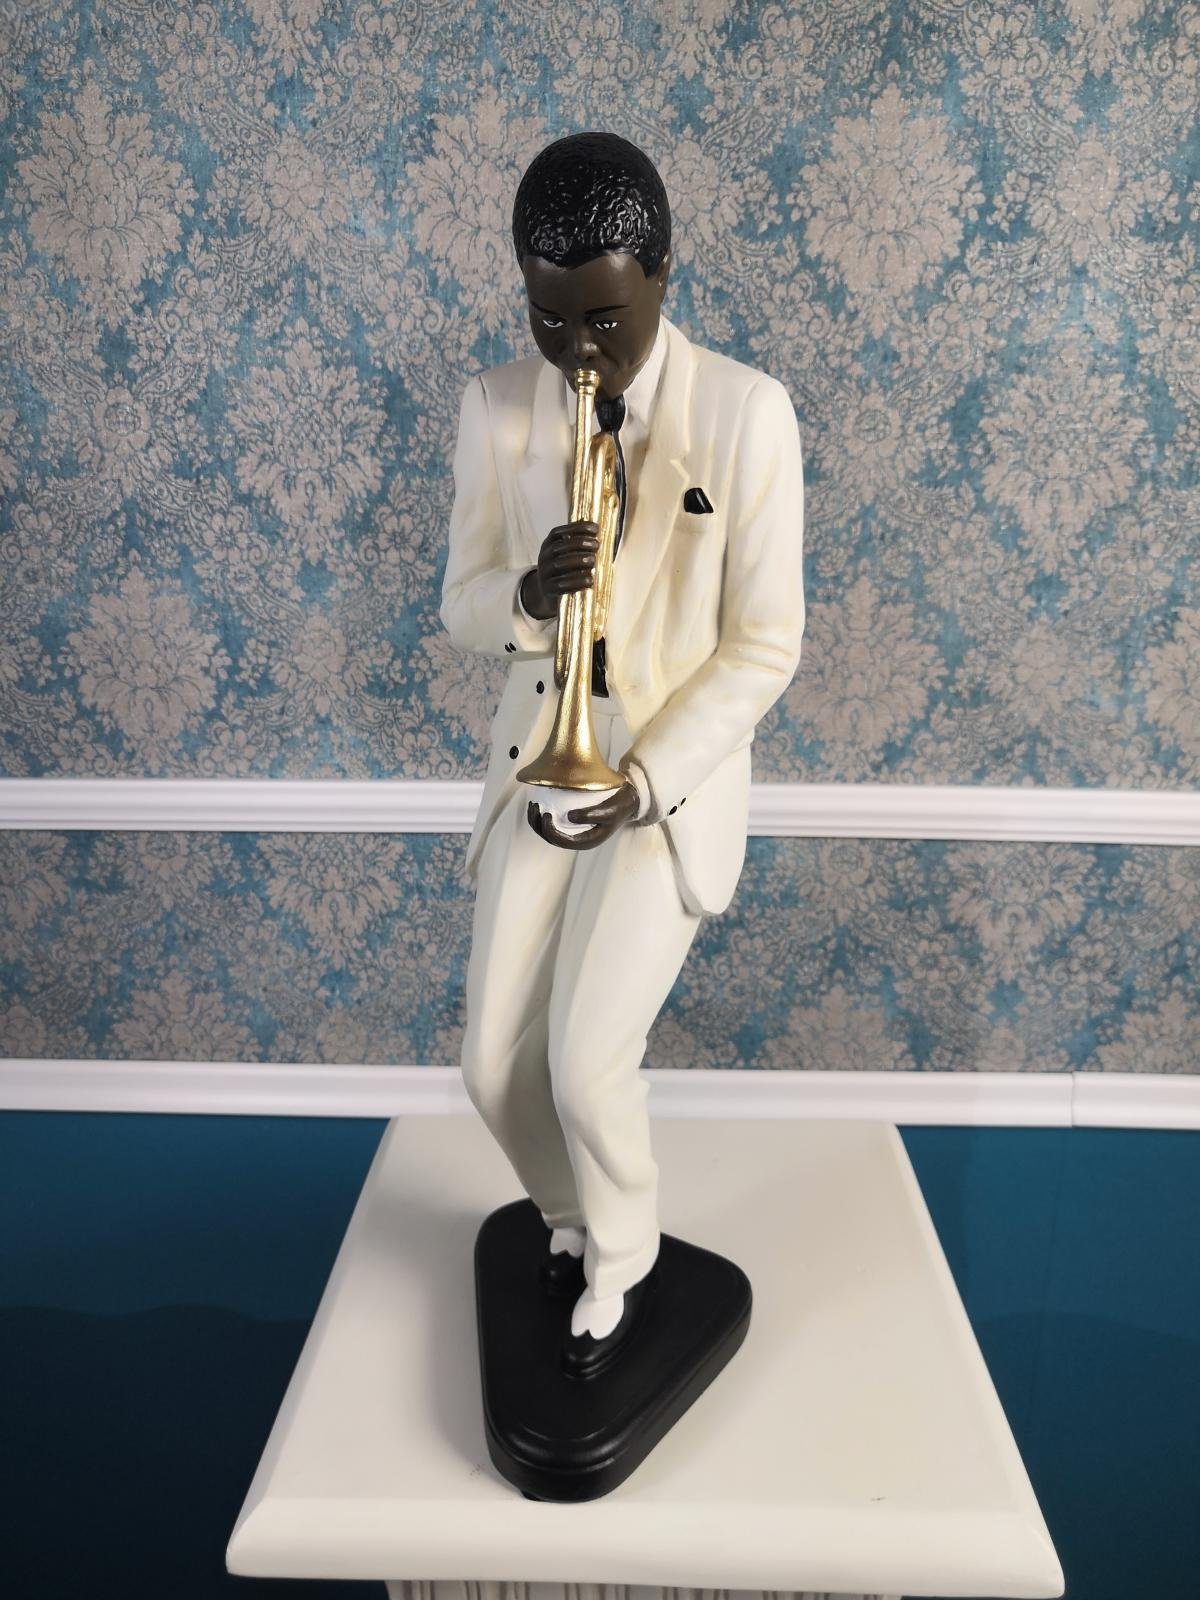 Deko Figuren Musik Skulptur Design JVmoebel Jazz Figur Statue Skulpturen Skulptur